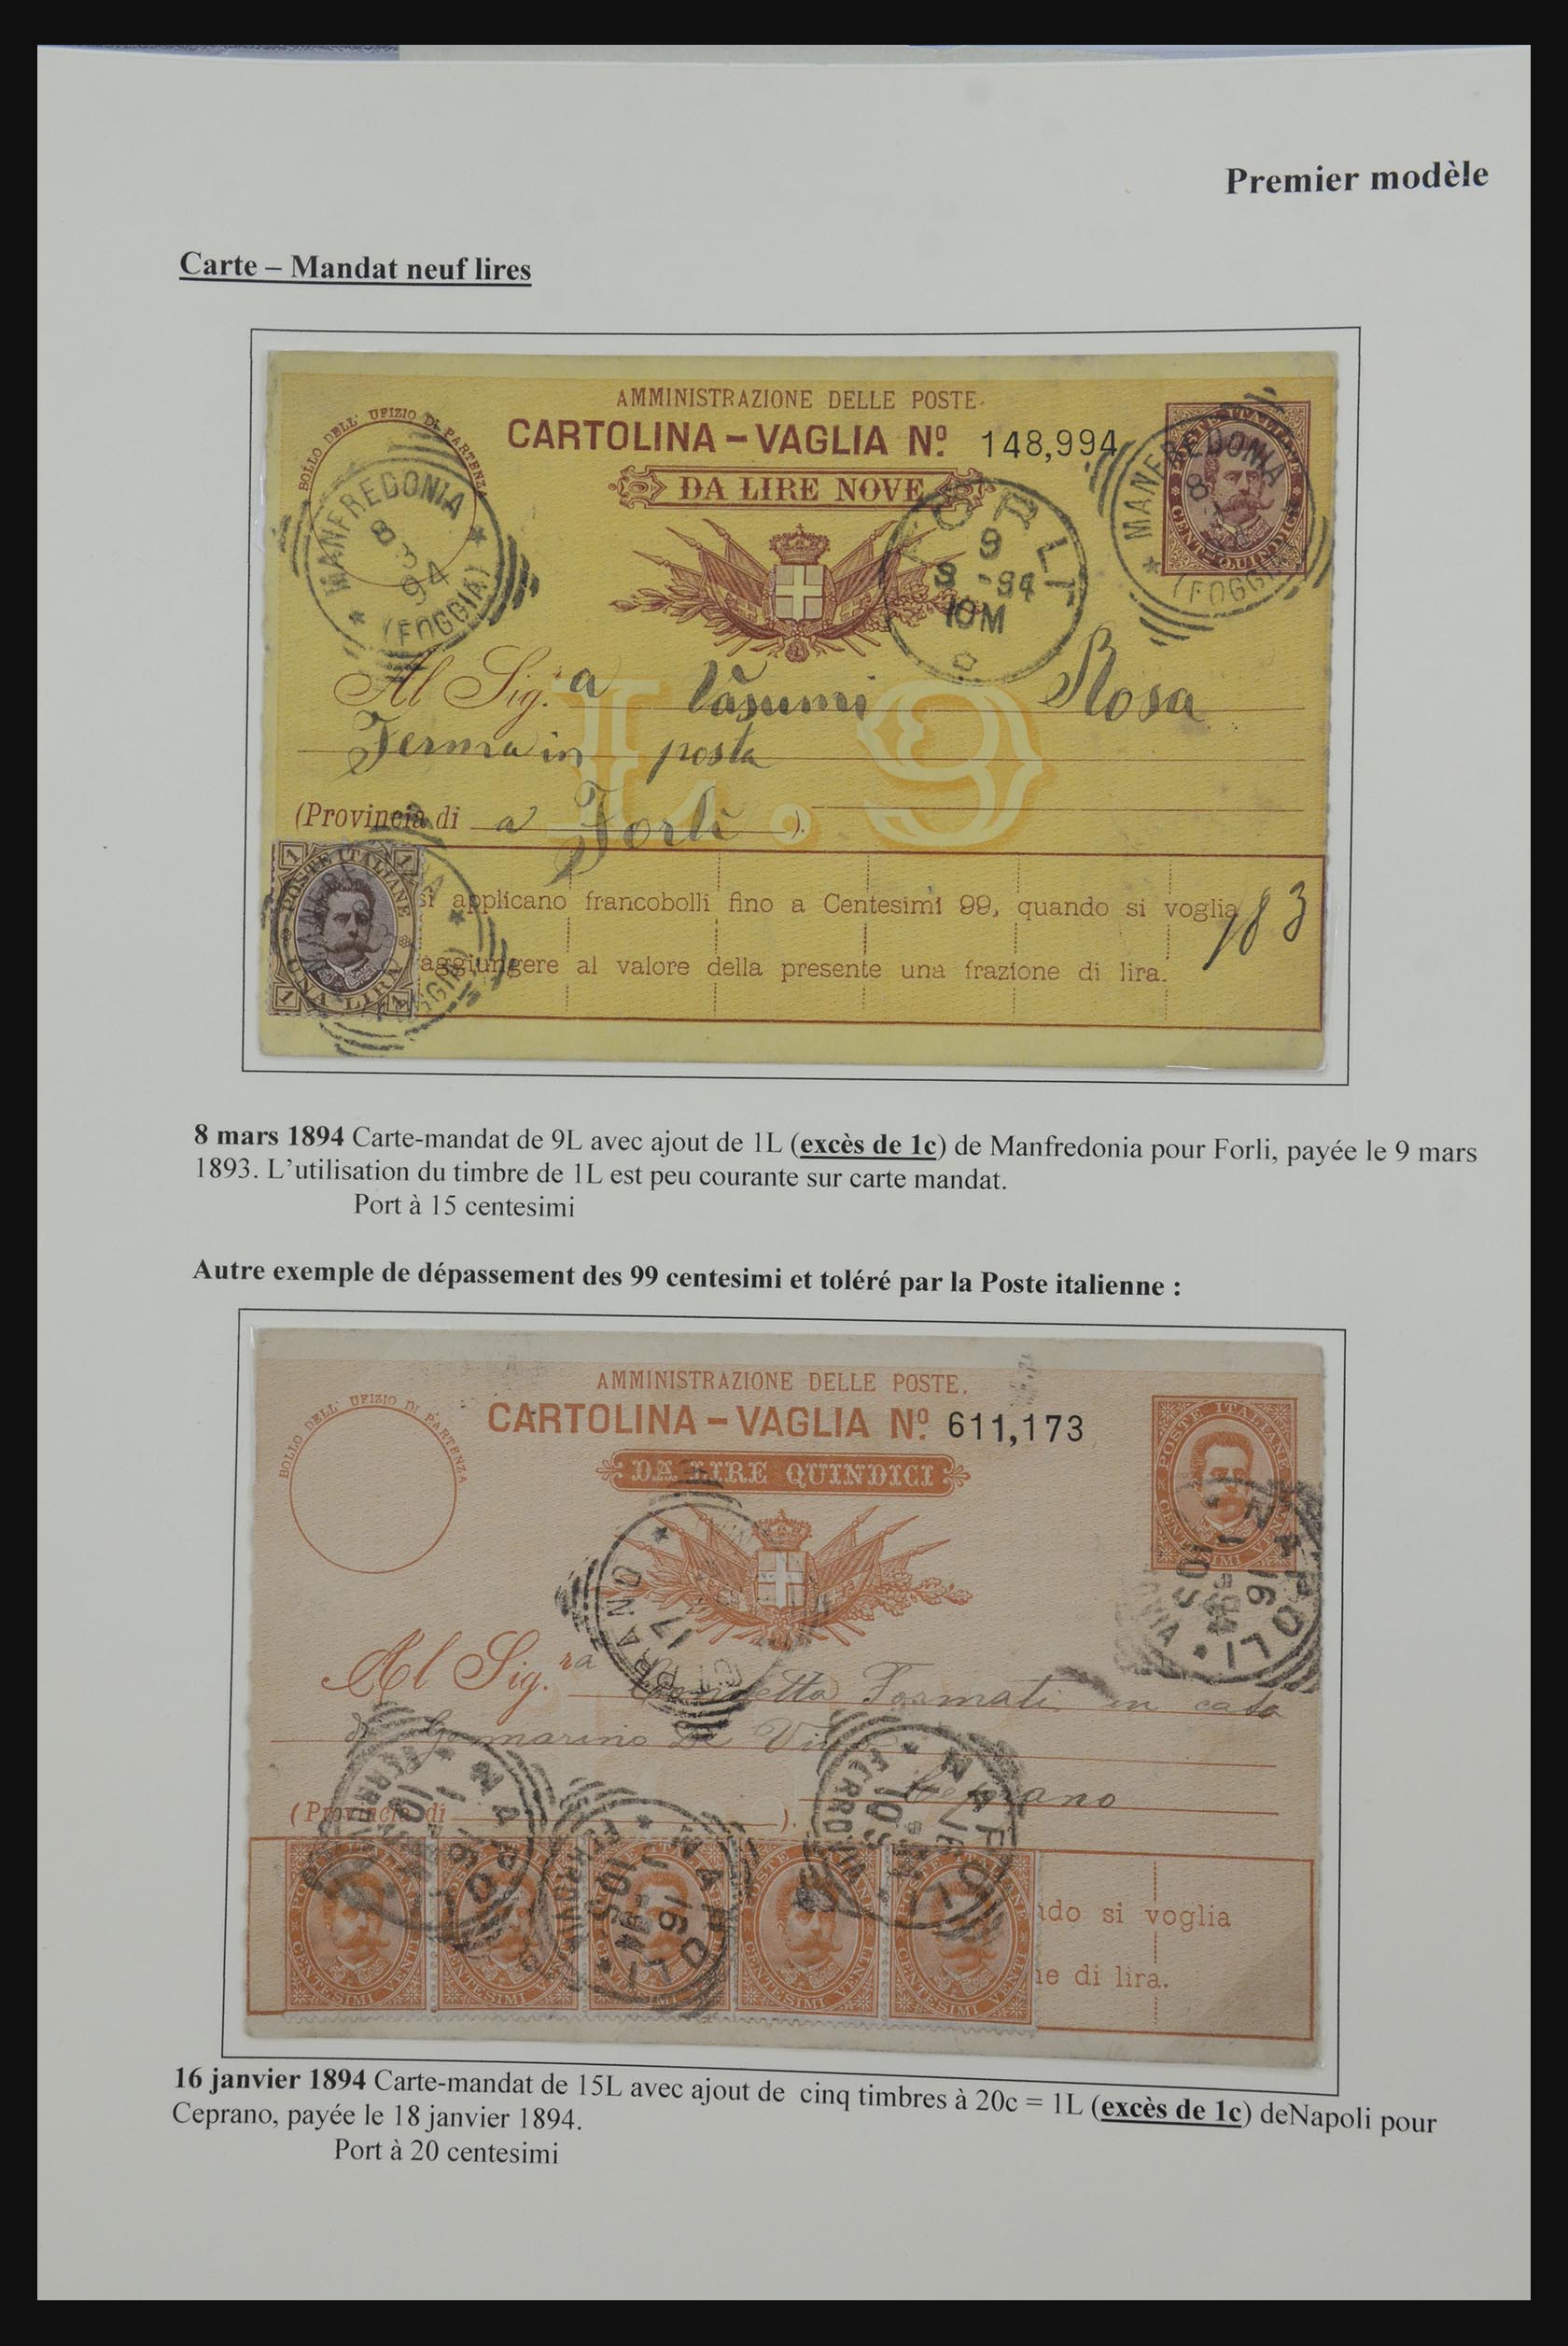 32243 009 - 32243 Italië postbewijskaarten 1892-1902.